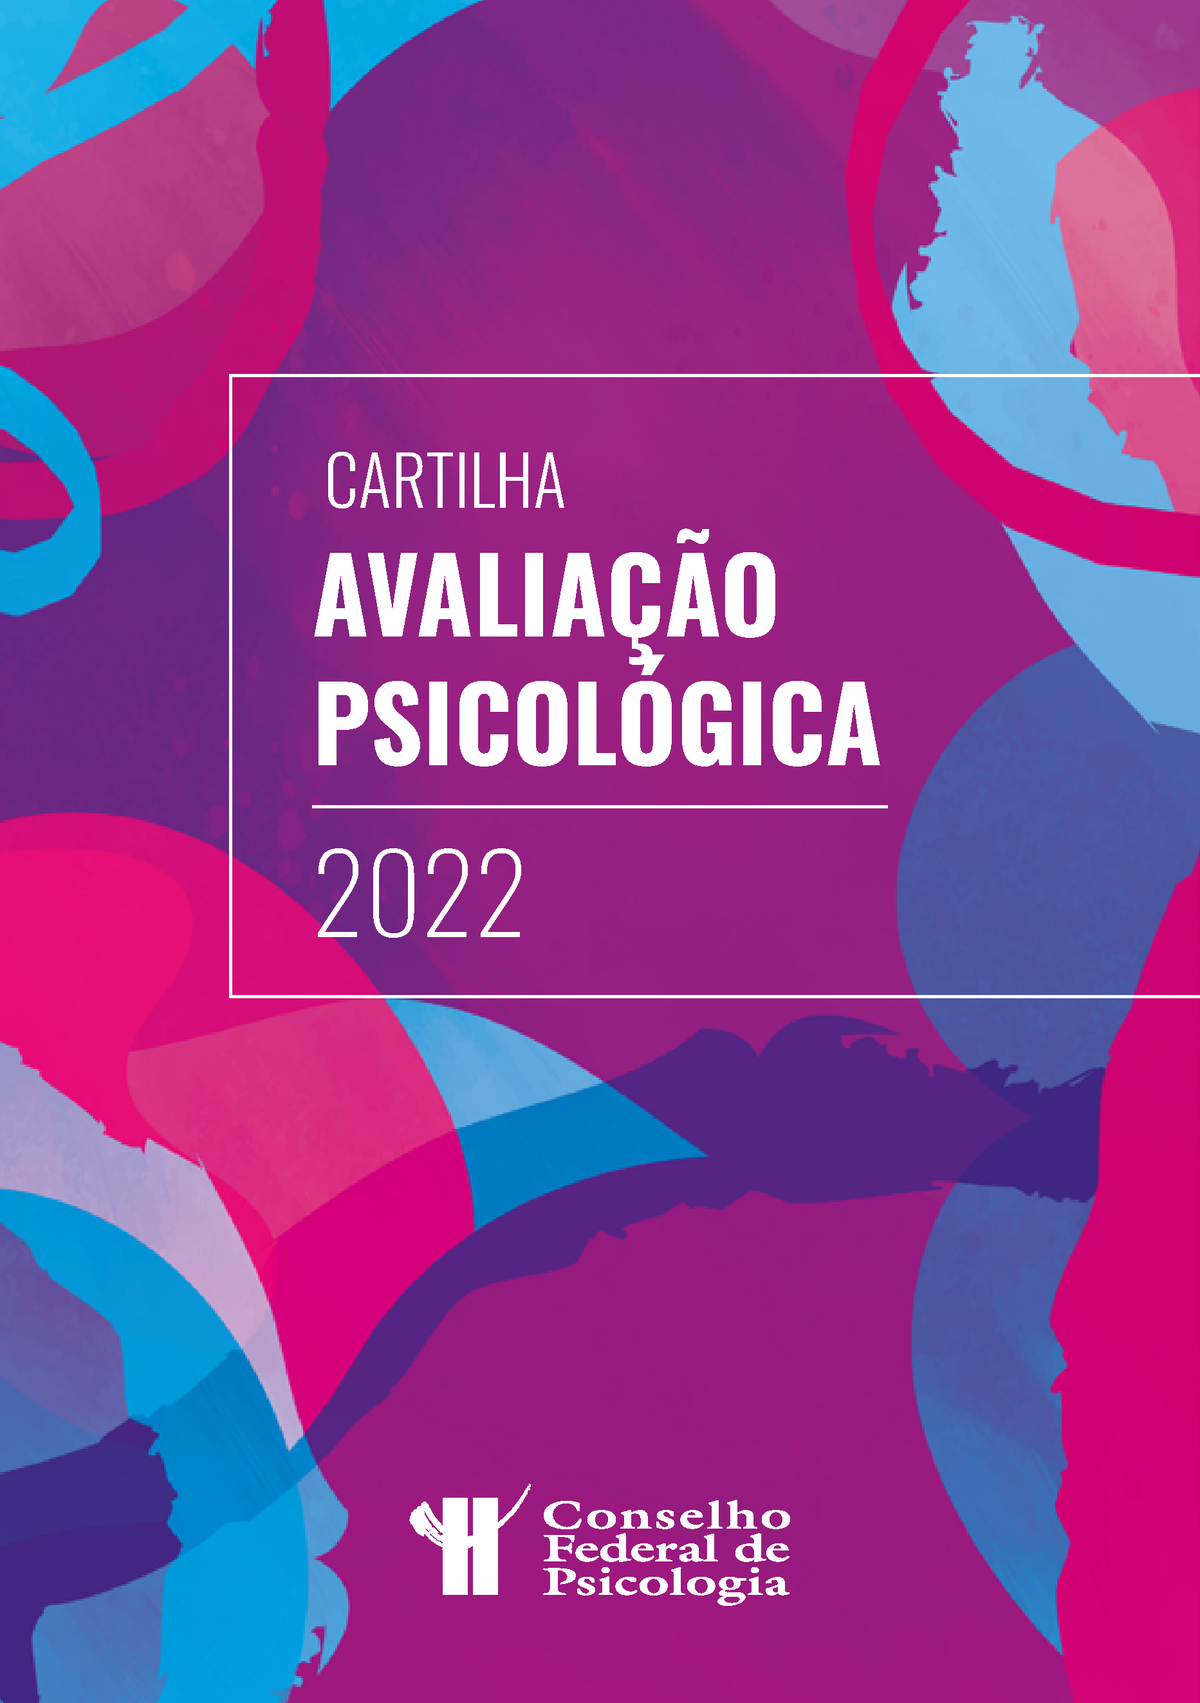 Cartilha Avaliacao Psicologica Cfp Agosto 2022 AvaliaÇÃo PsicolÓgica 2022 Cartilha Conselho 6225